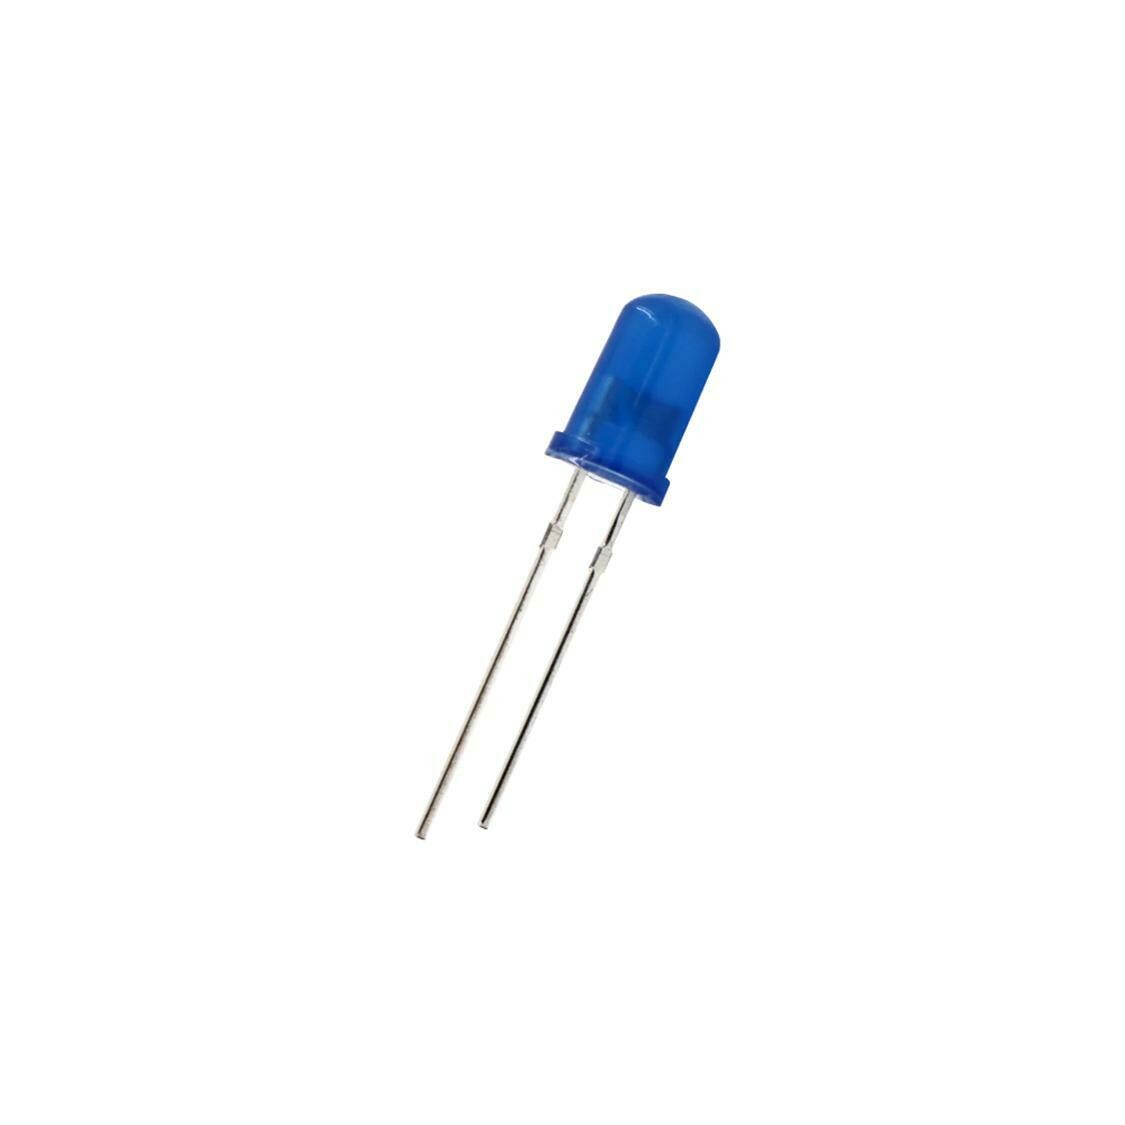 LED Bleu 5 mm 3V 20mA longueur 18 mm